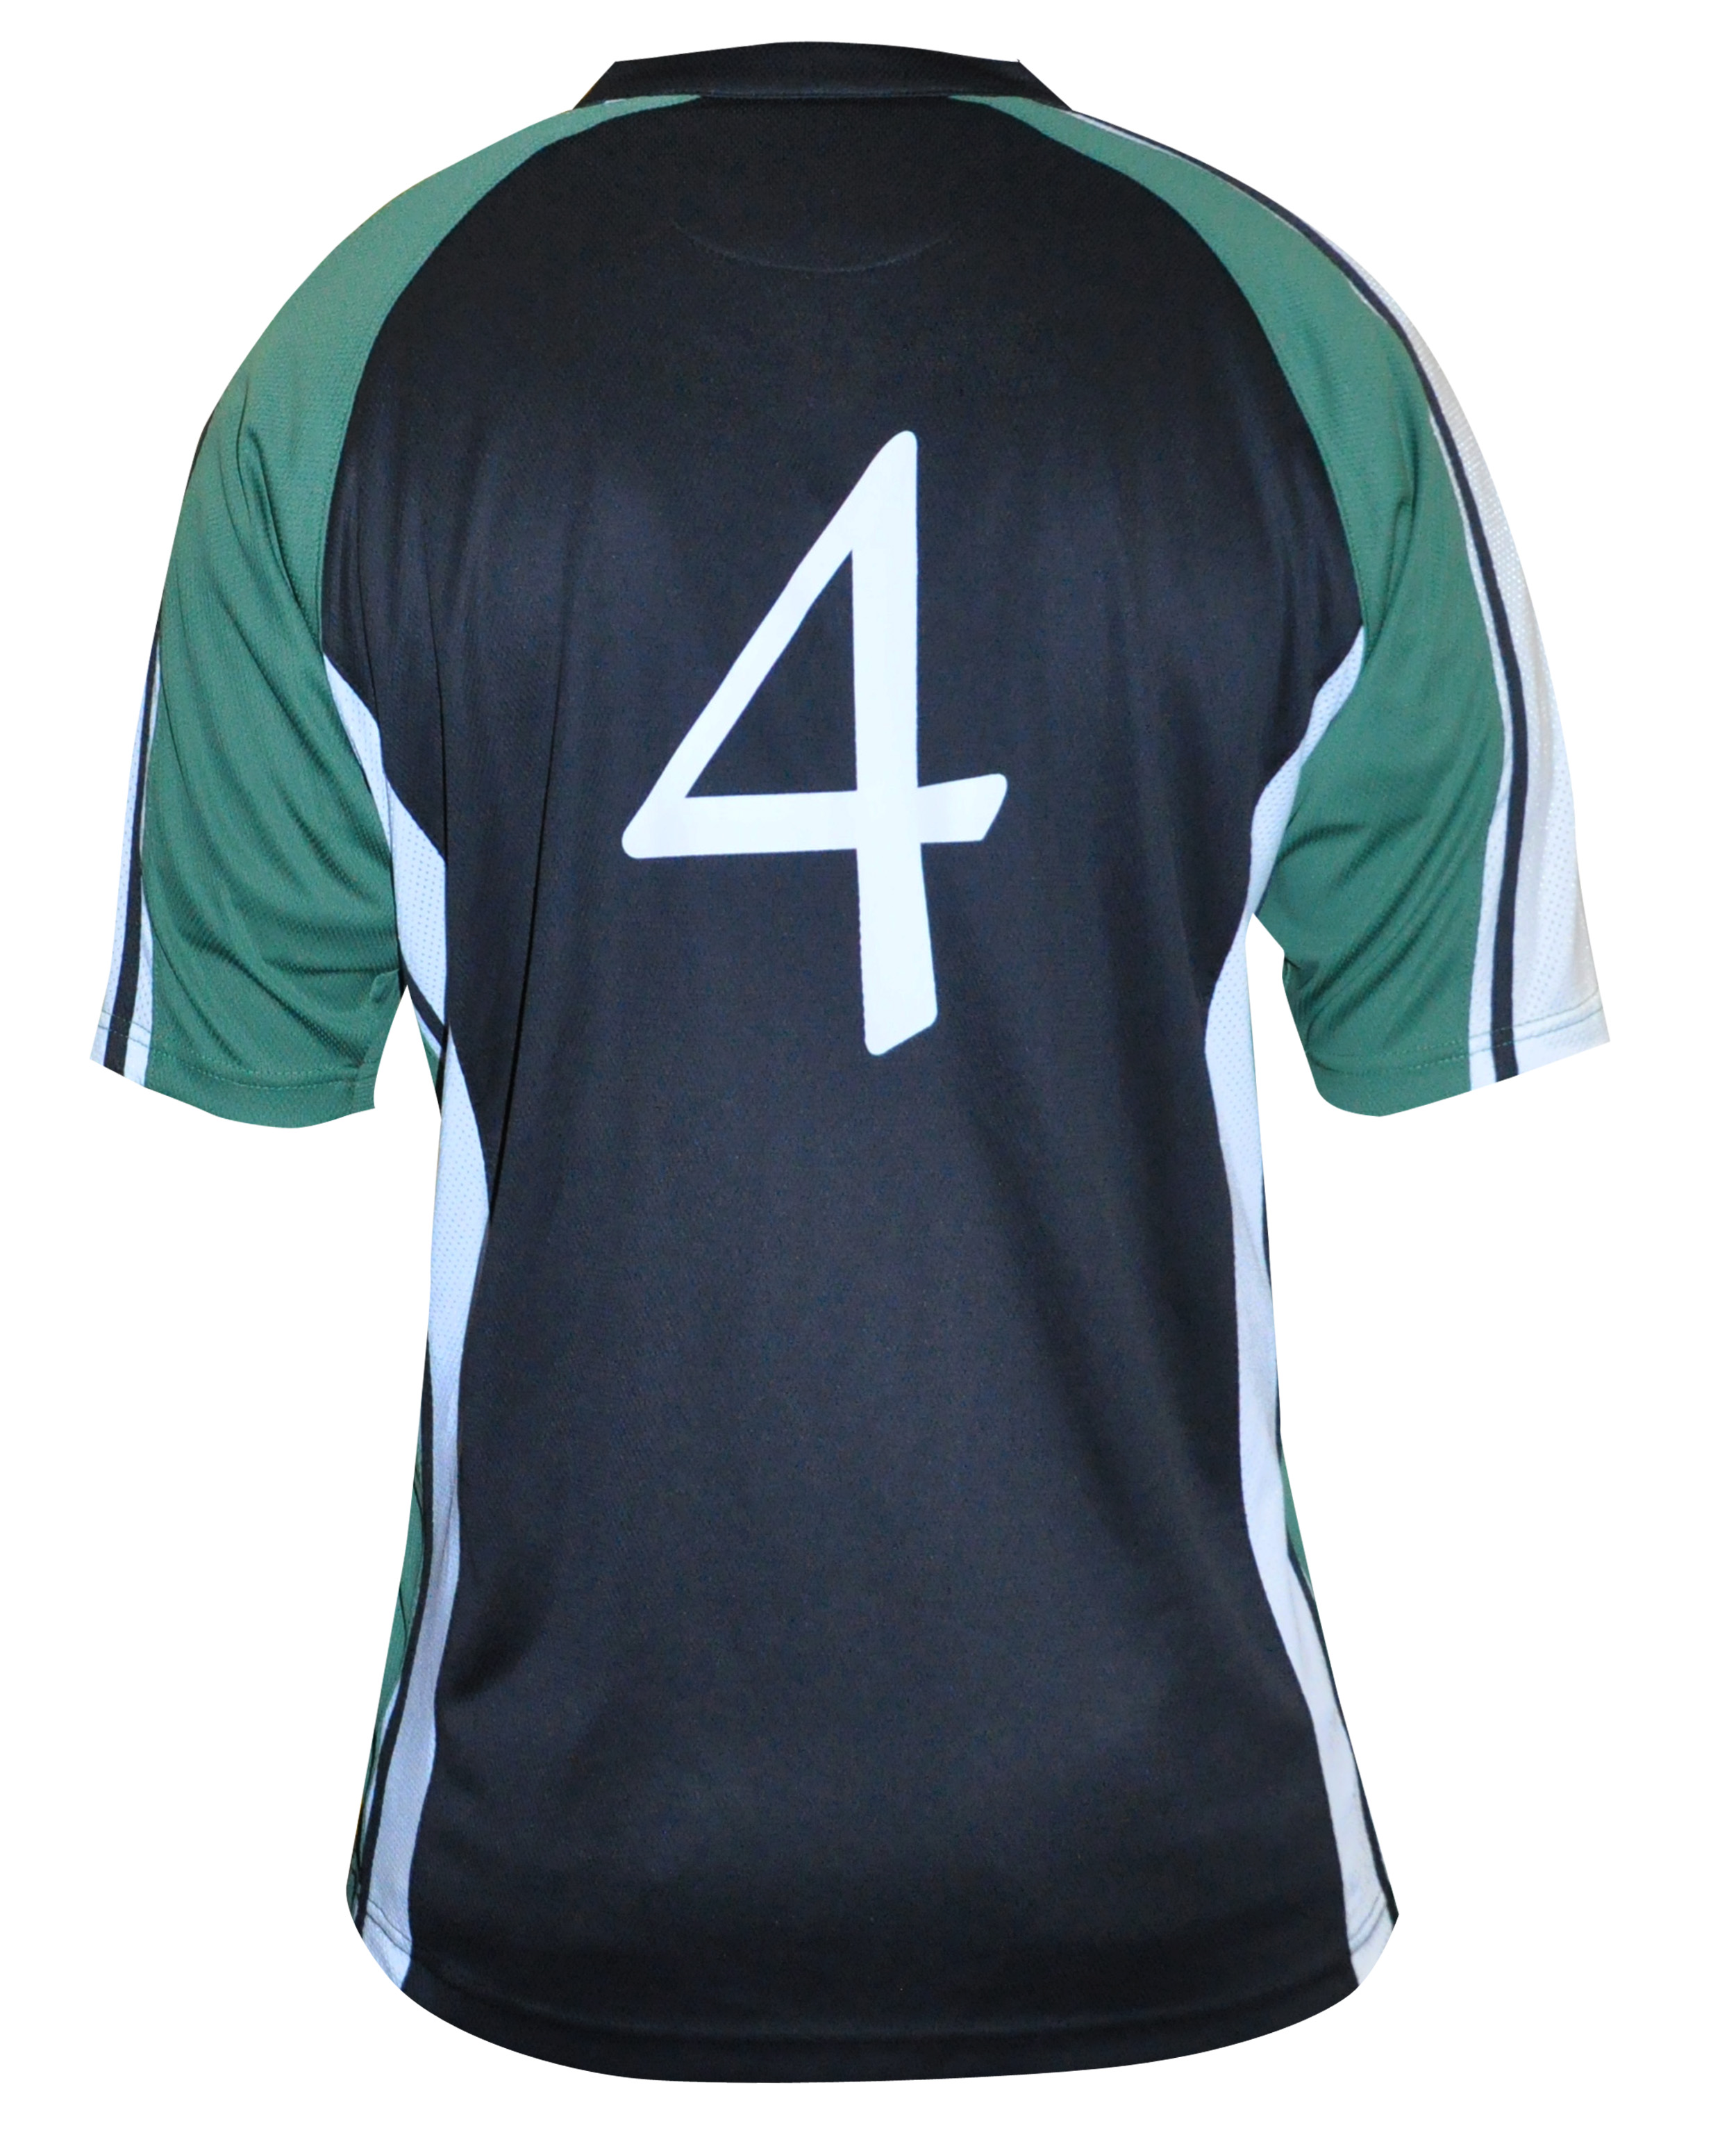 Irish Shirt | Green & Navy Performance Ireland Rugby ...